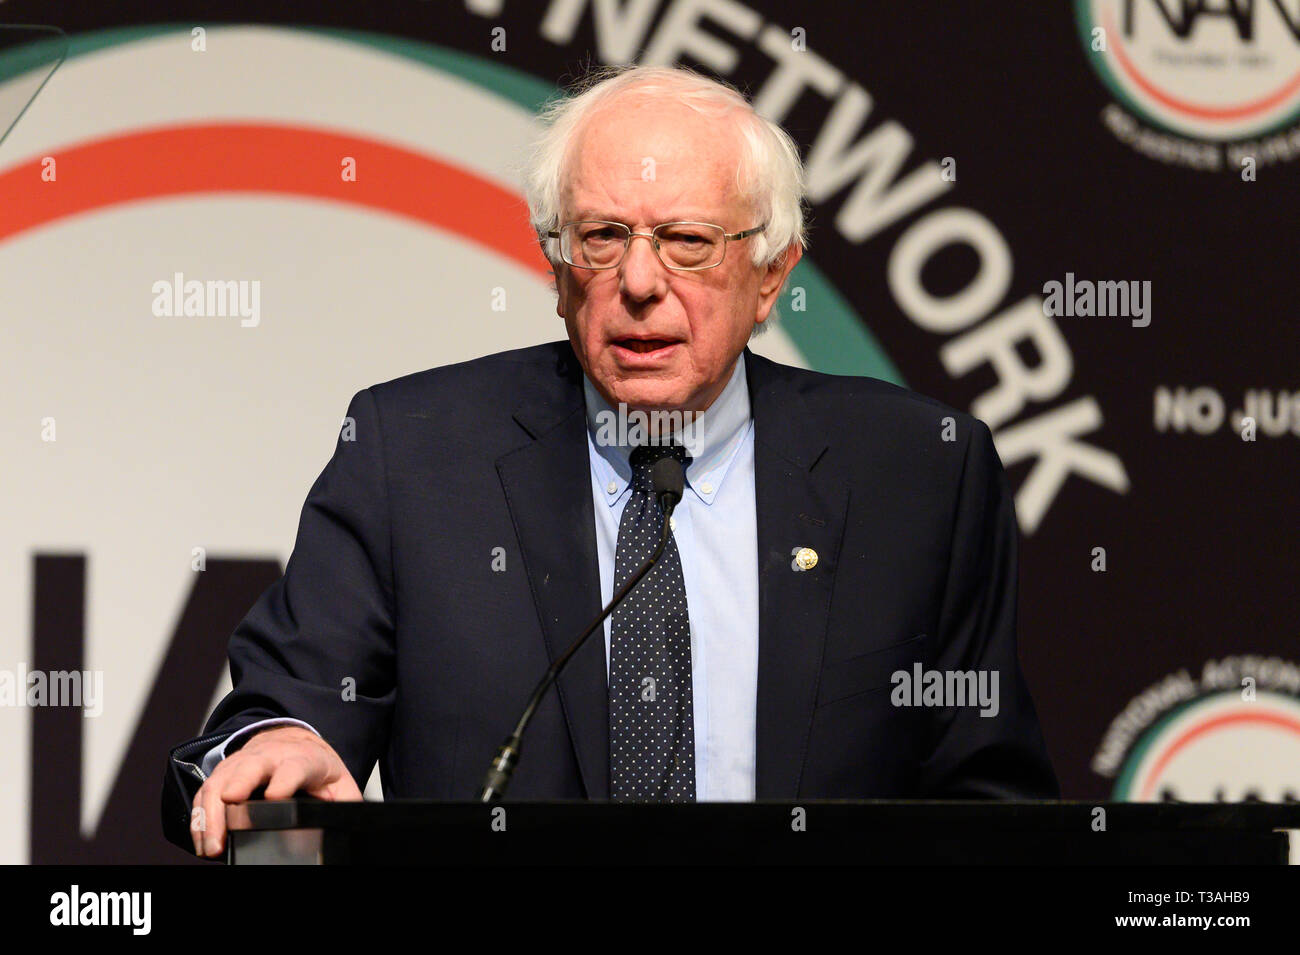 États-unis le sénateur Bernie Sanders (D-VT) au réseau d'Action National de la convention nationale (NAN) à New York. Banque D'Images